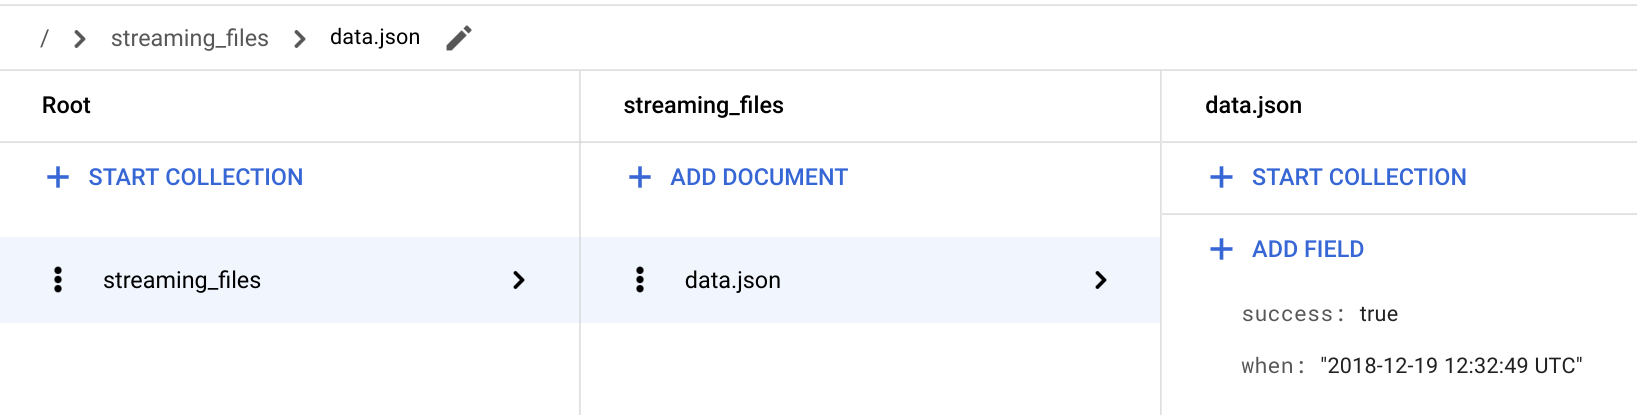 Verifique se a função "streaming" está armazenando o status de sucesso do arquivo